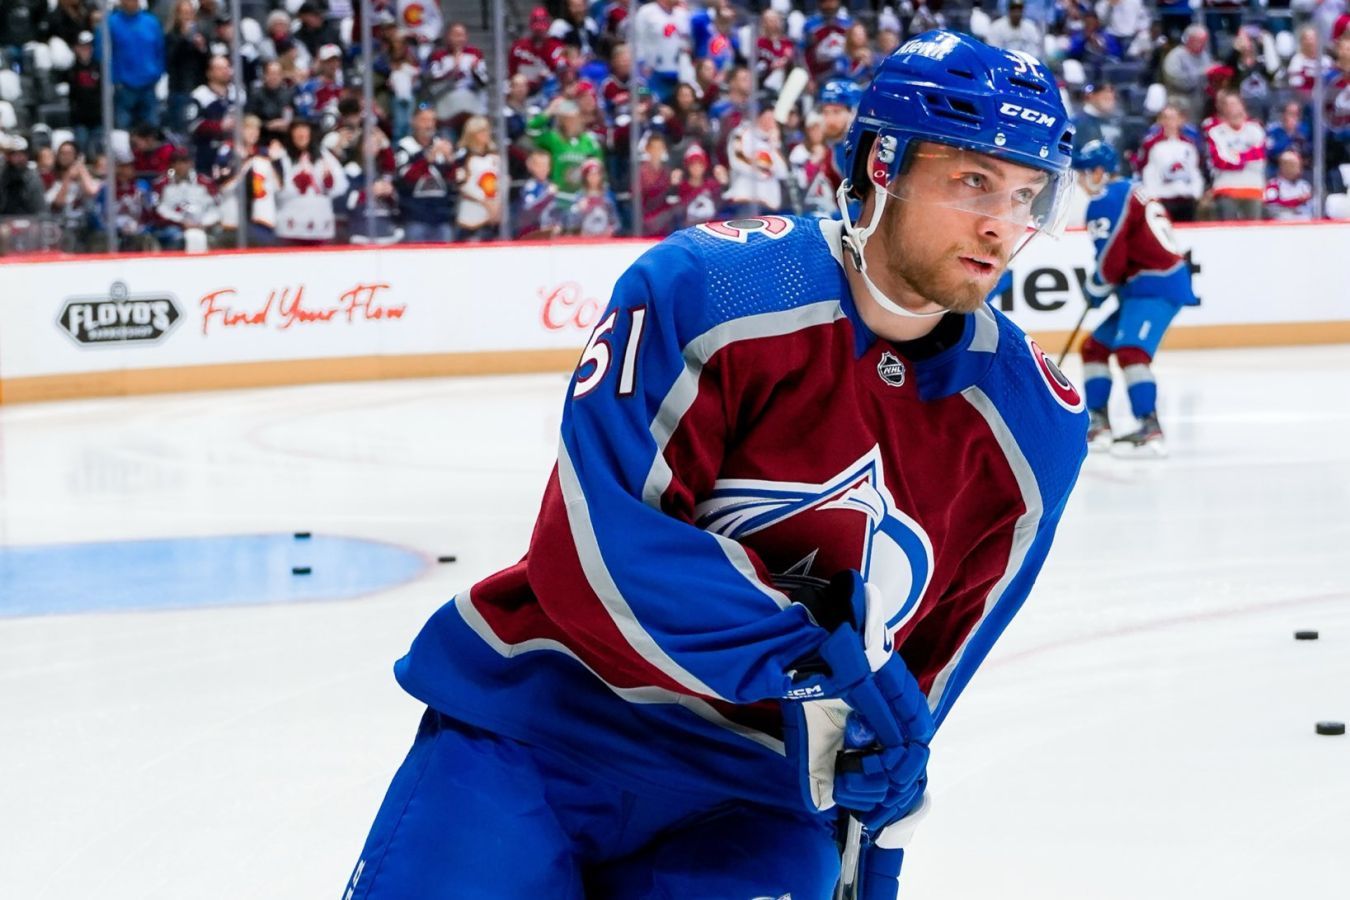 Андрей Коваленко оценил дебют сына Николая в НХЛ